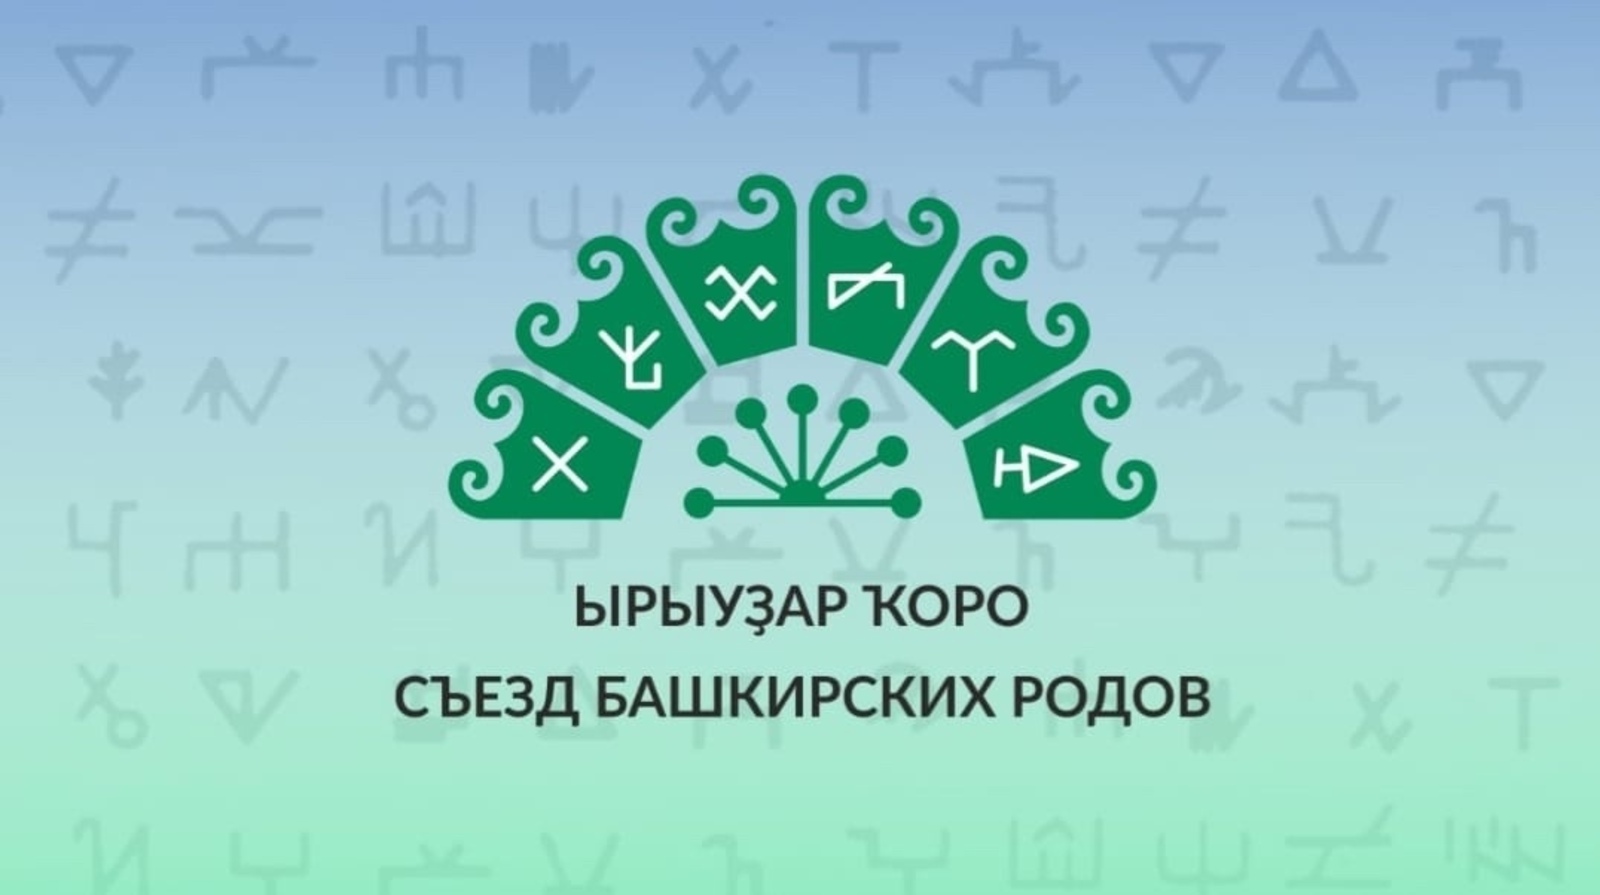 15 октября 2021 года  в  г. Туймазы Республика Башкортостан состоится Съезд  башкирских родов (Ырыуҙар ҡоро) в рамках Года башкирской истории